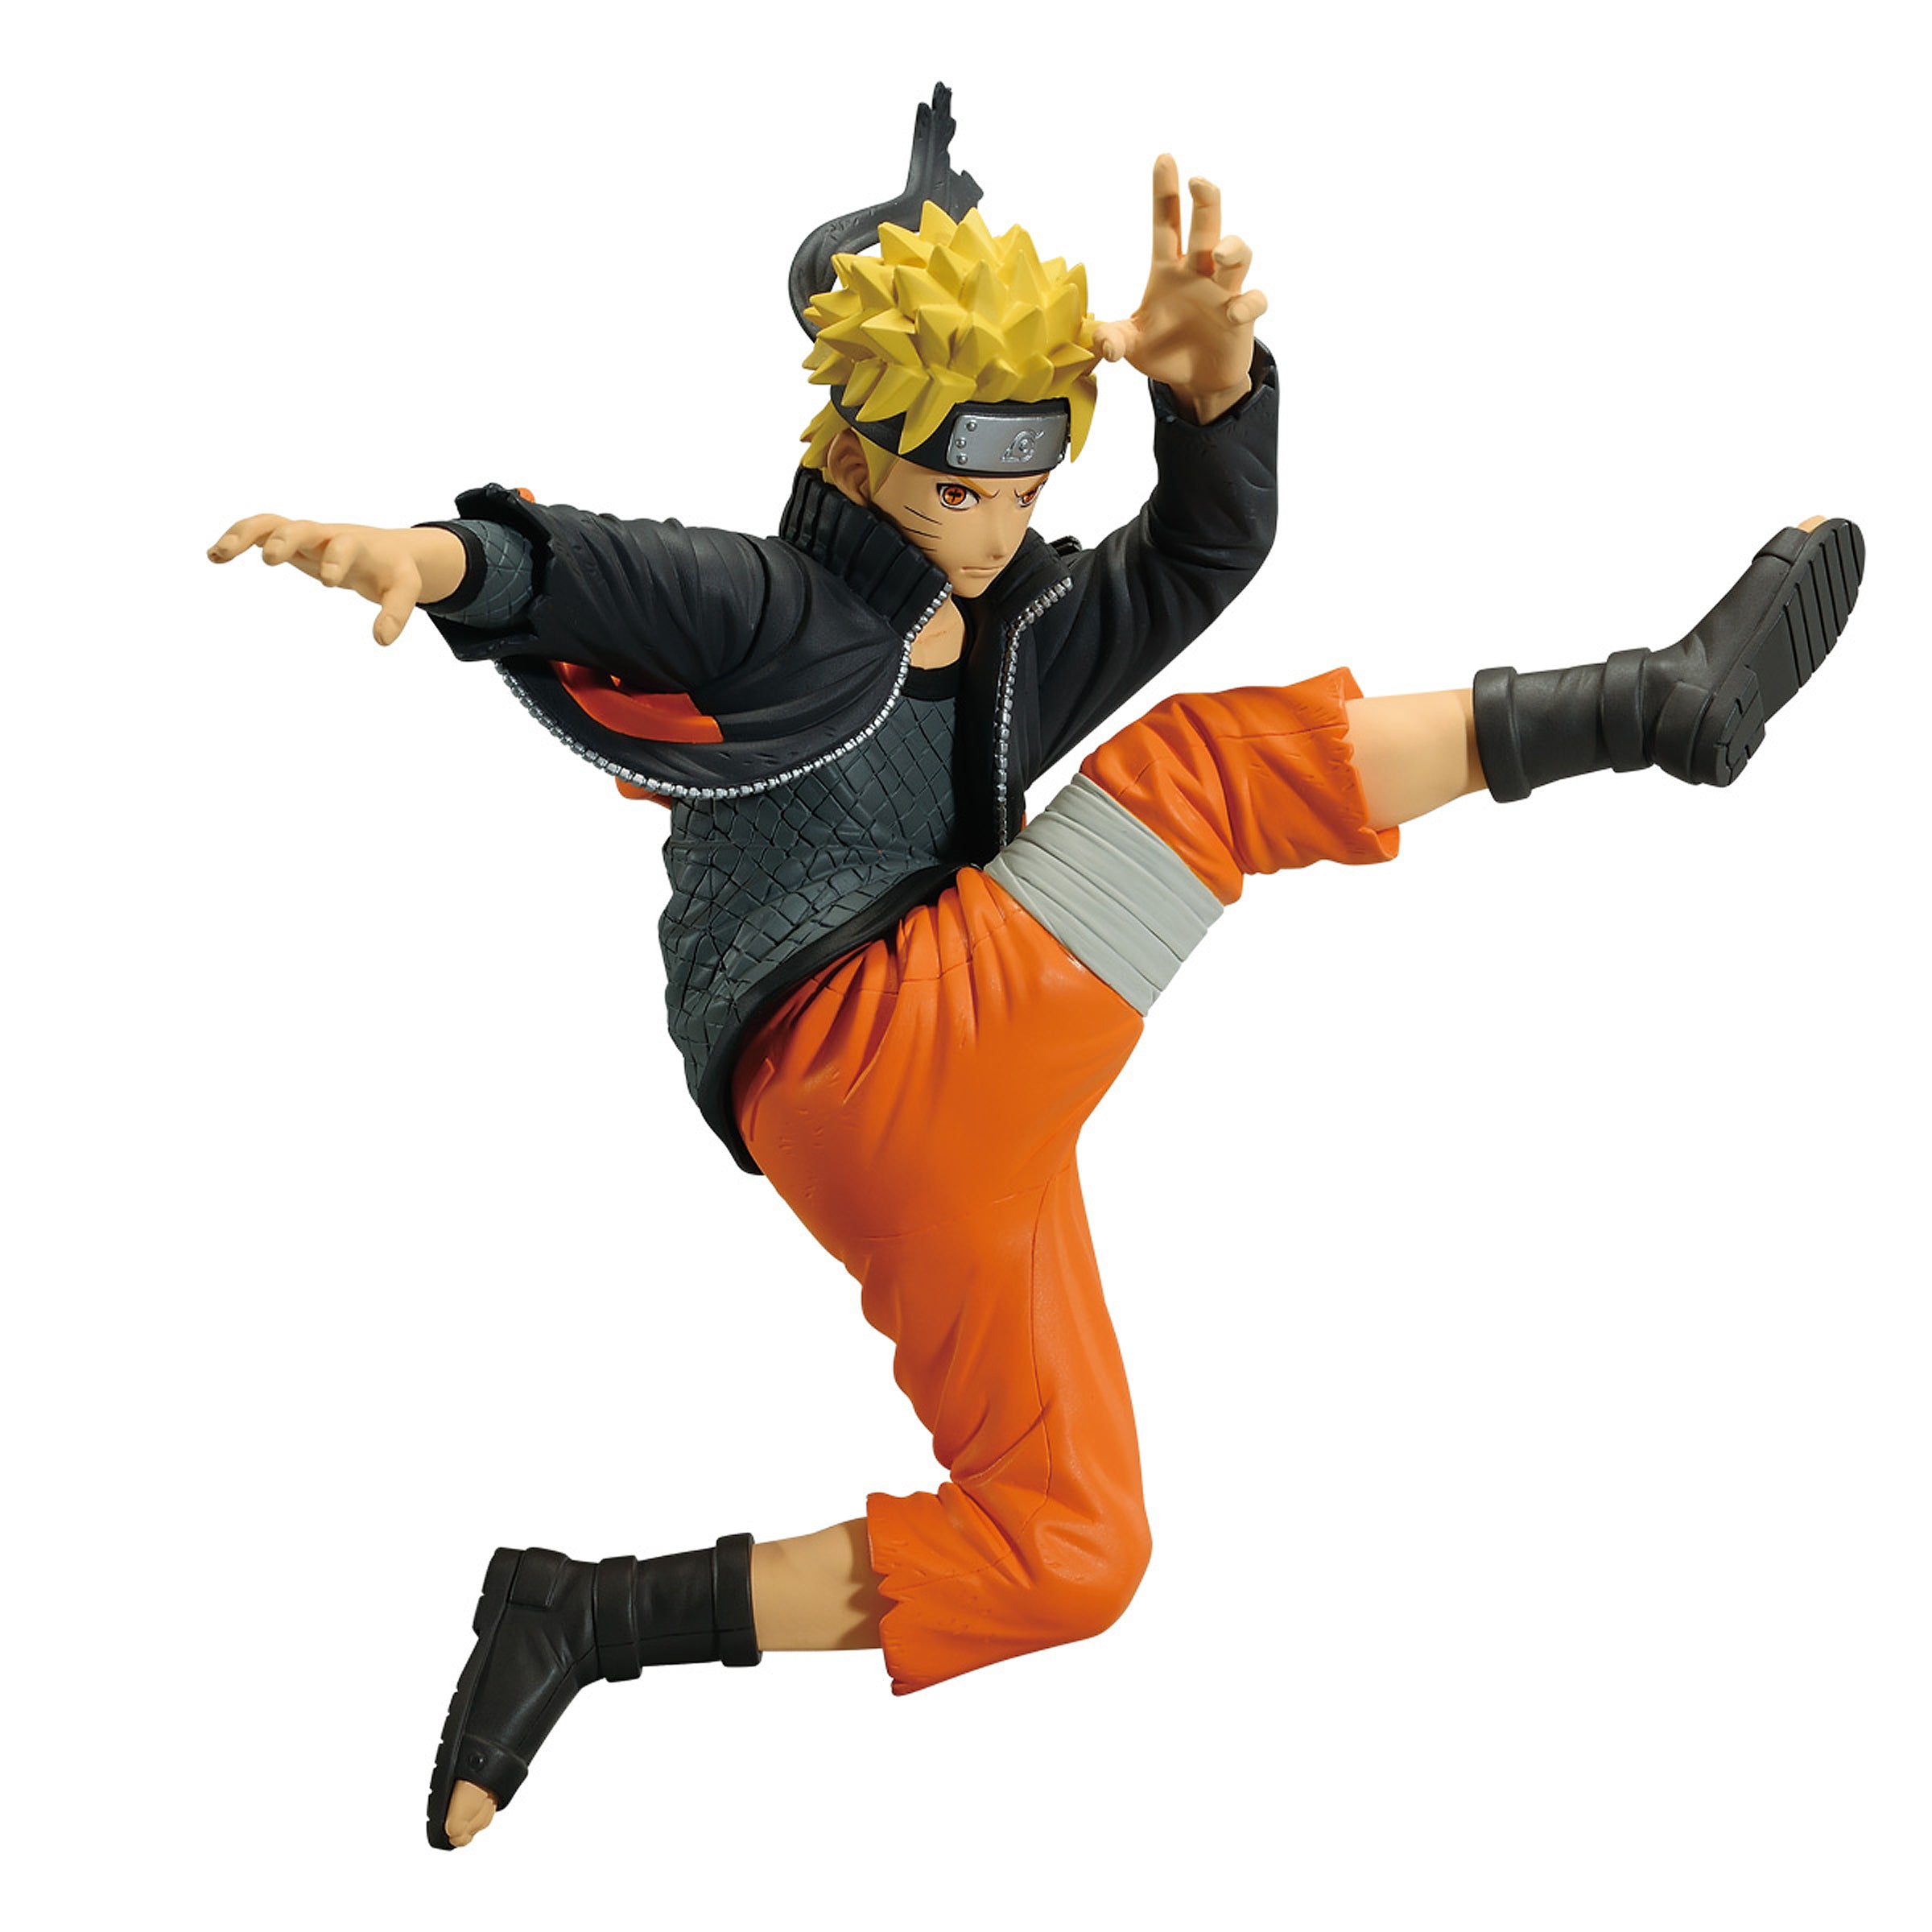 Banpresto Vibration Stars: Naruto Shippuden - Naruto Uzumaki IV